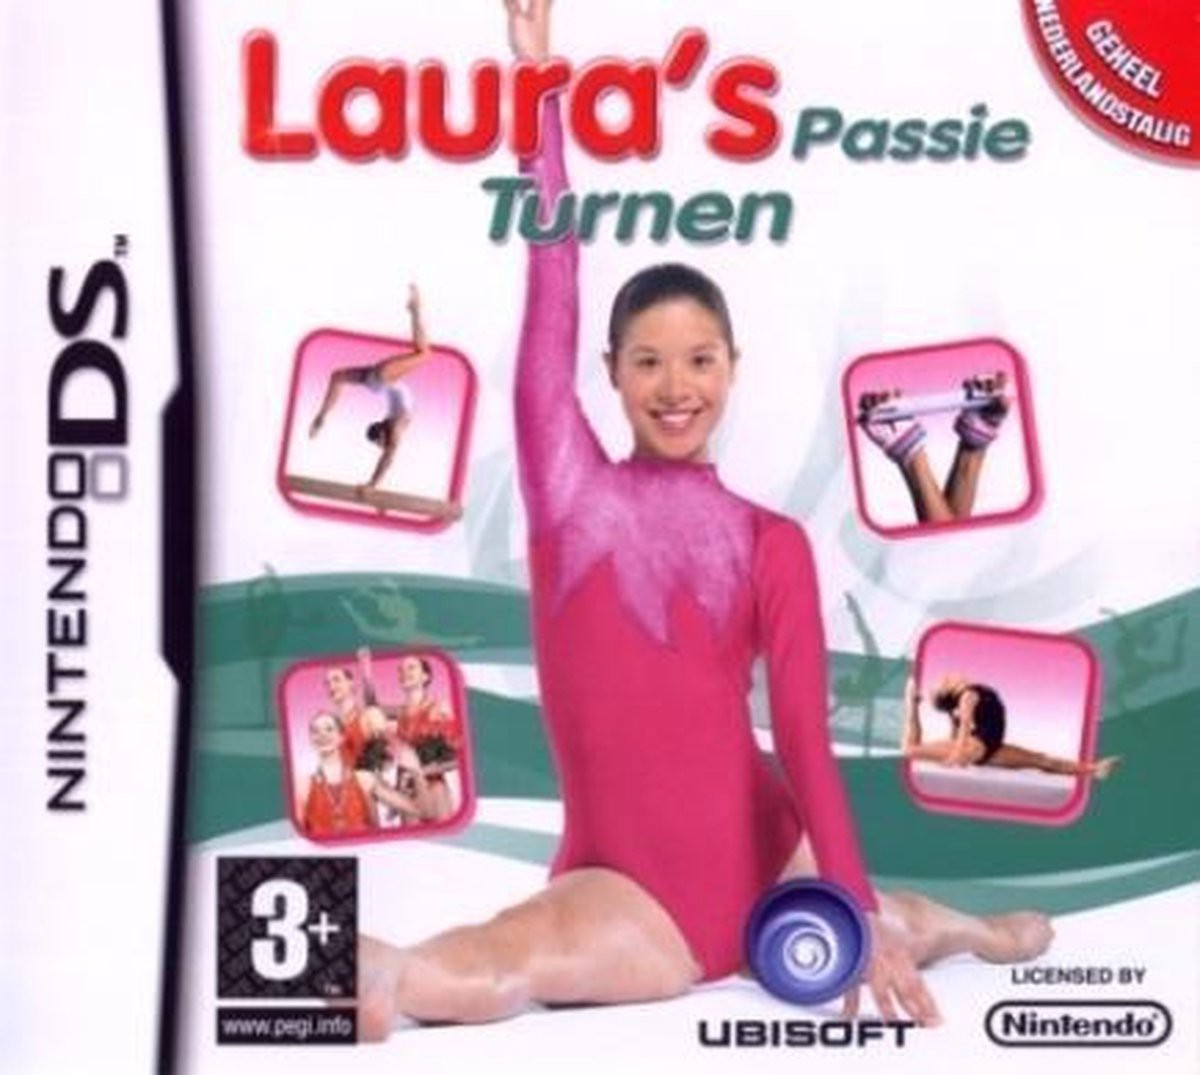 Laura's Passie Turnen - Nintendo DS Games